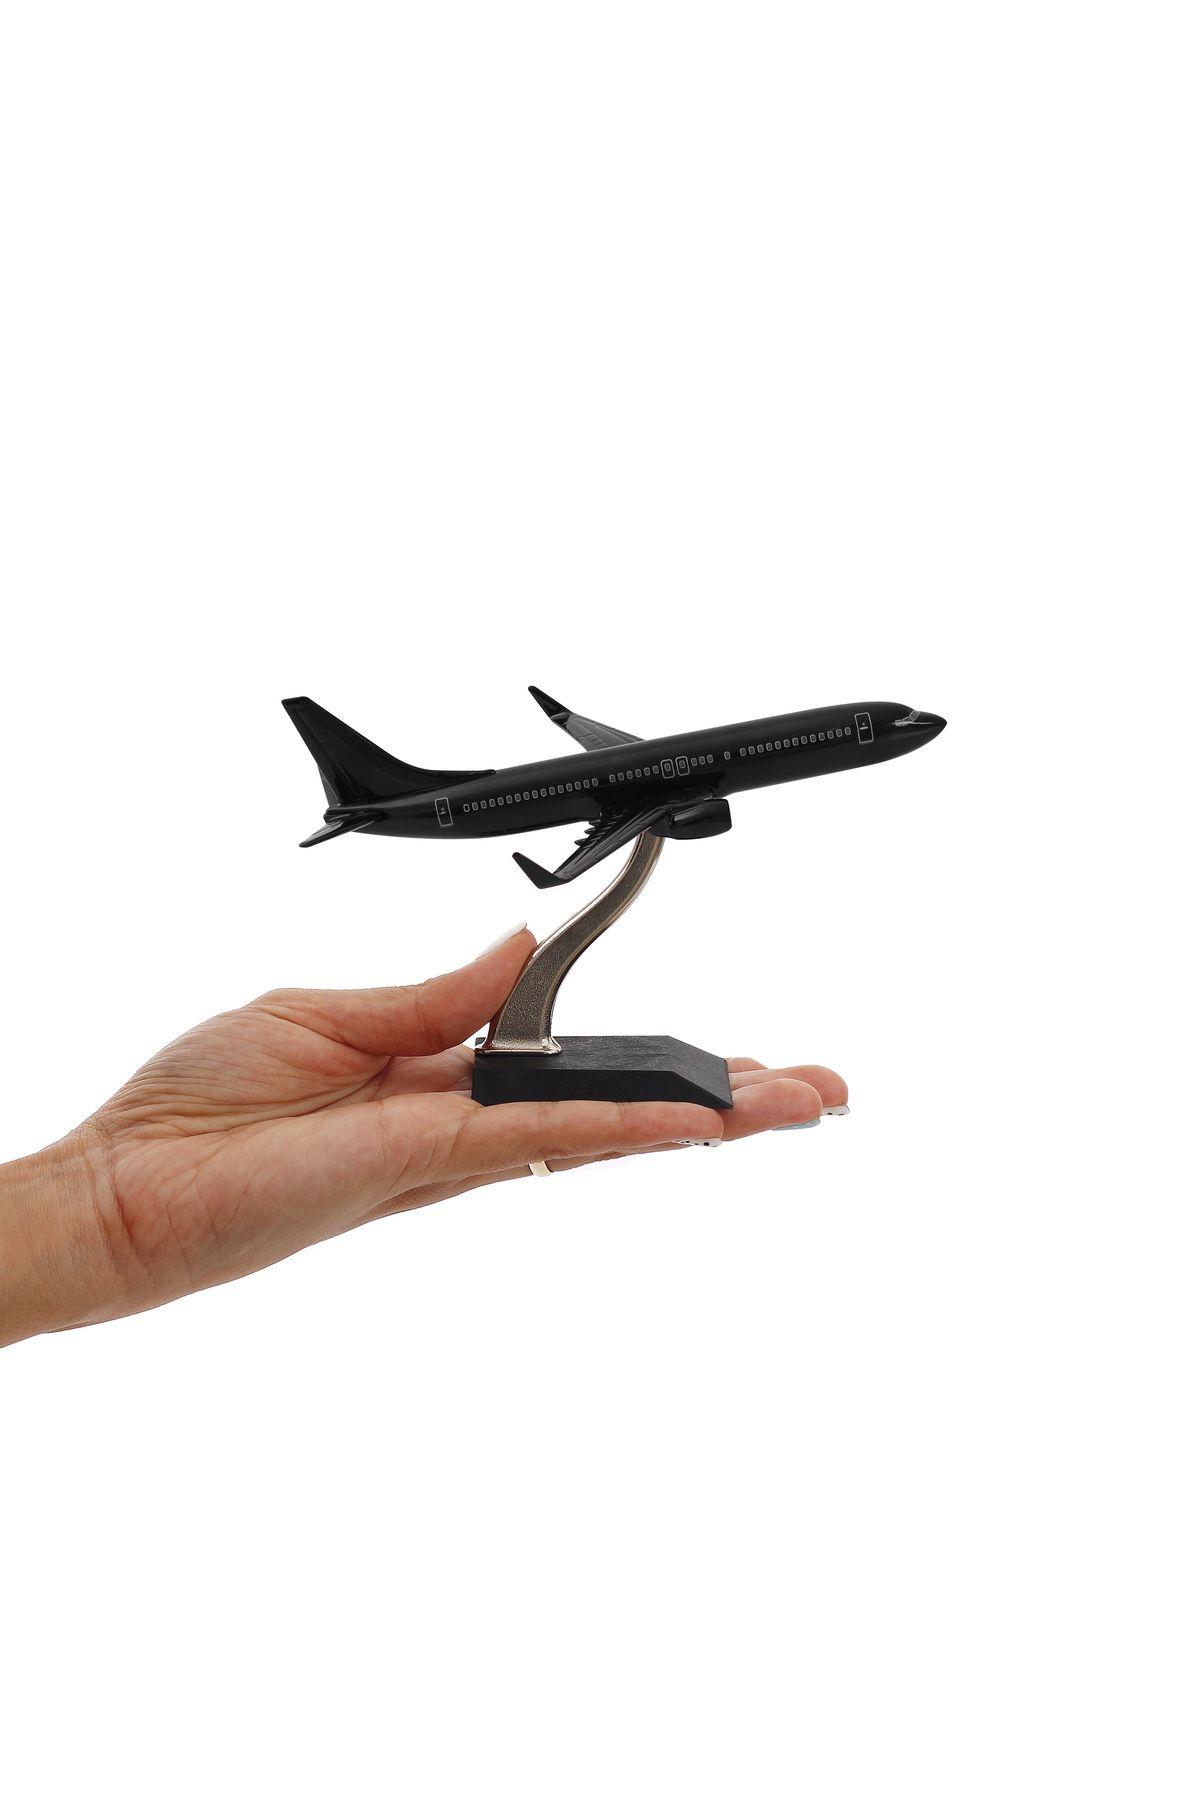 zekupp - Maket Uçak - Boeing 737-800 1/250 Metal Gövde - Siyah Özel Tasarım Model Uçak